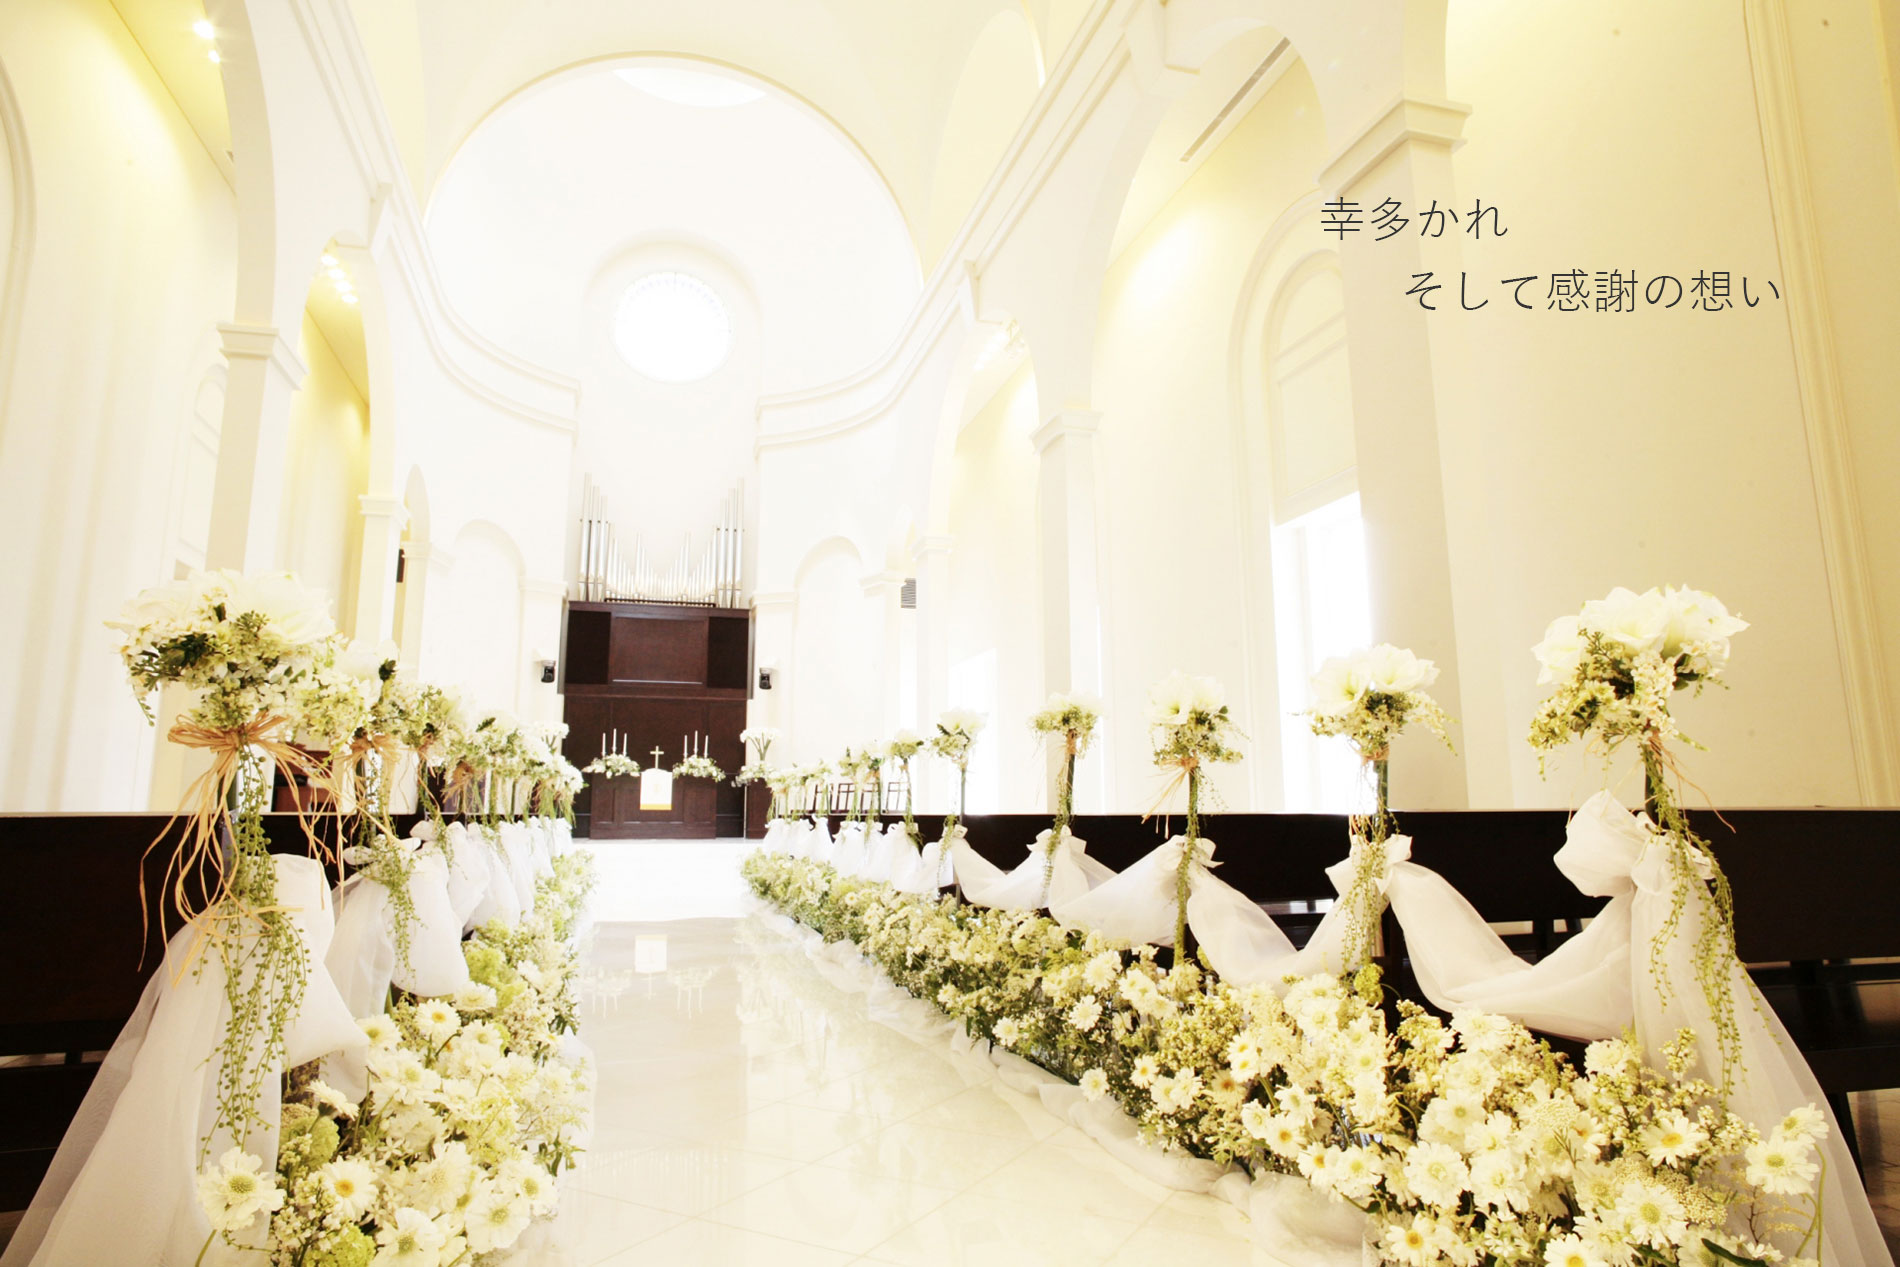 鎌倉など神奈川県で結婚式を挙げる方におすすめの伝統の引き出物